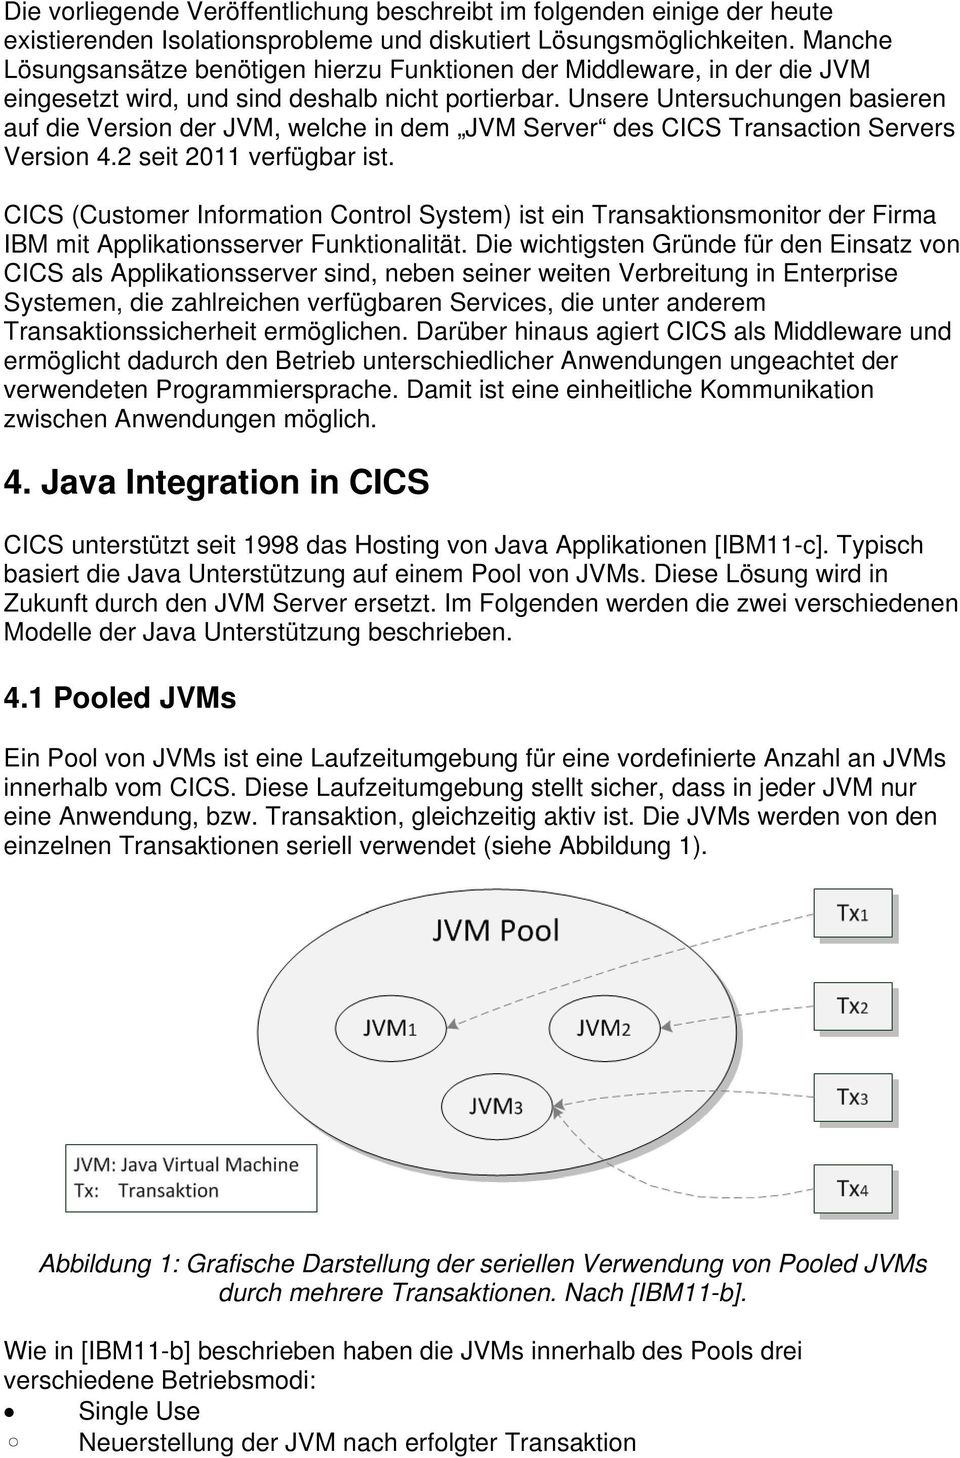 Unsere Untersuchungen basieren auf die Version der JVM, welche in dem JVM Server des CICS Transaction Servers Version 4.2 seit 2011 verfügbar ist.